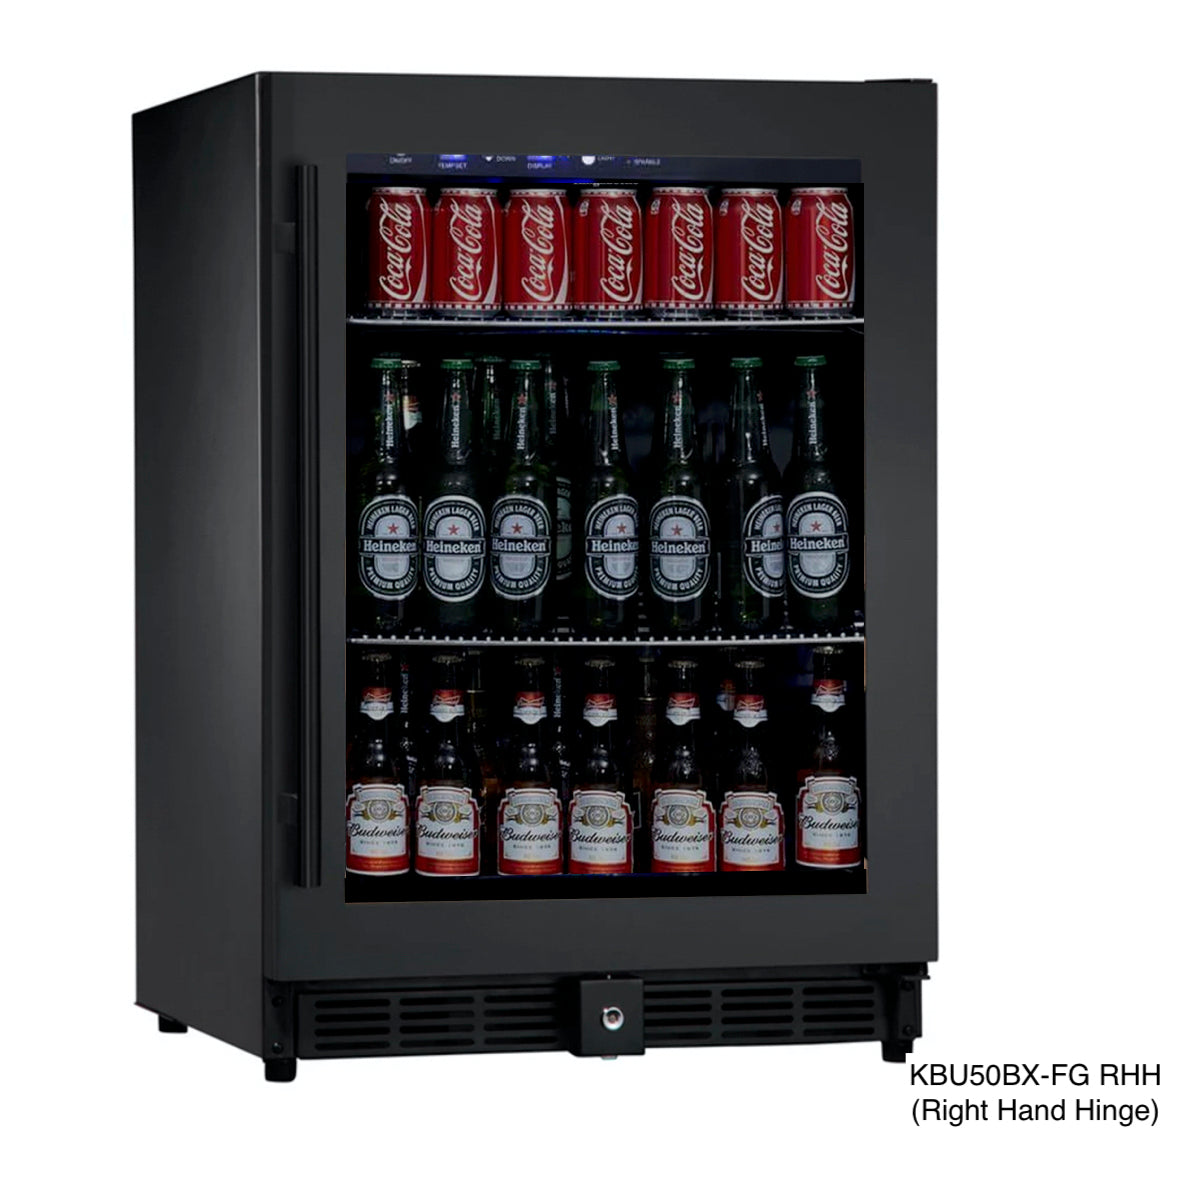 Kingsbottle 24 Inch Under Counter Beer Cooler Fridge Built In KBU50BX-FG RHH-Wine Coolers-The Wine Cooler Club